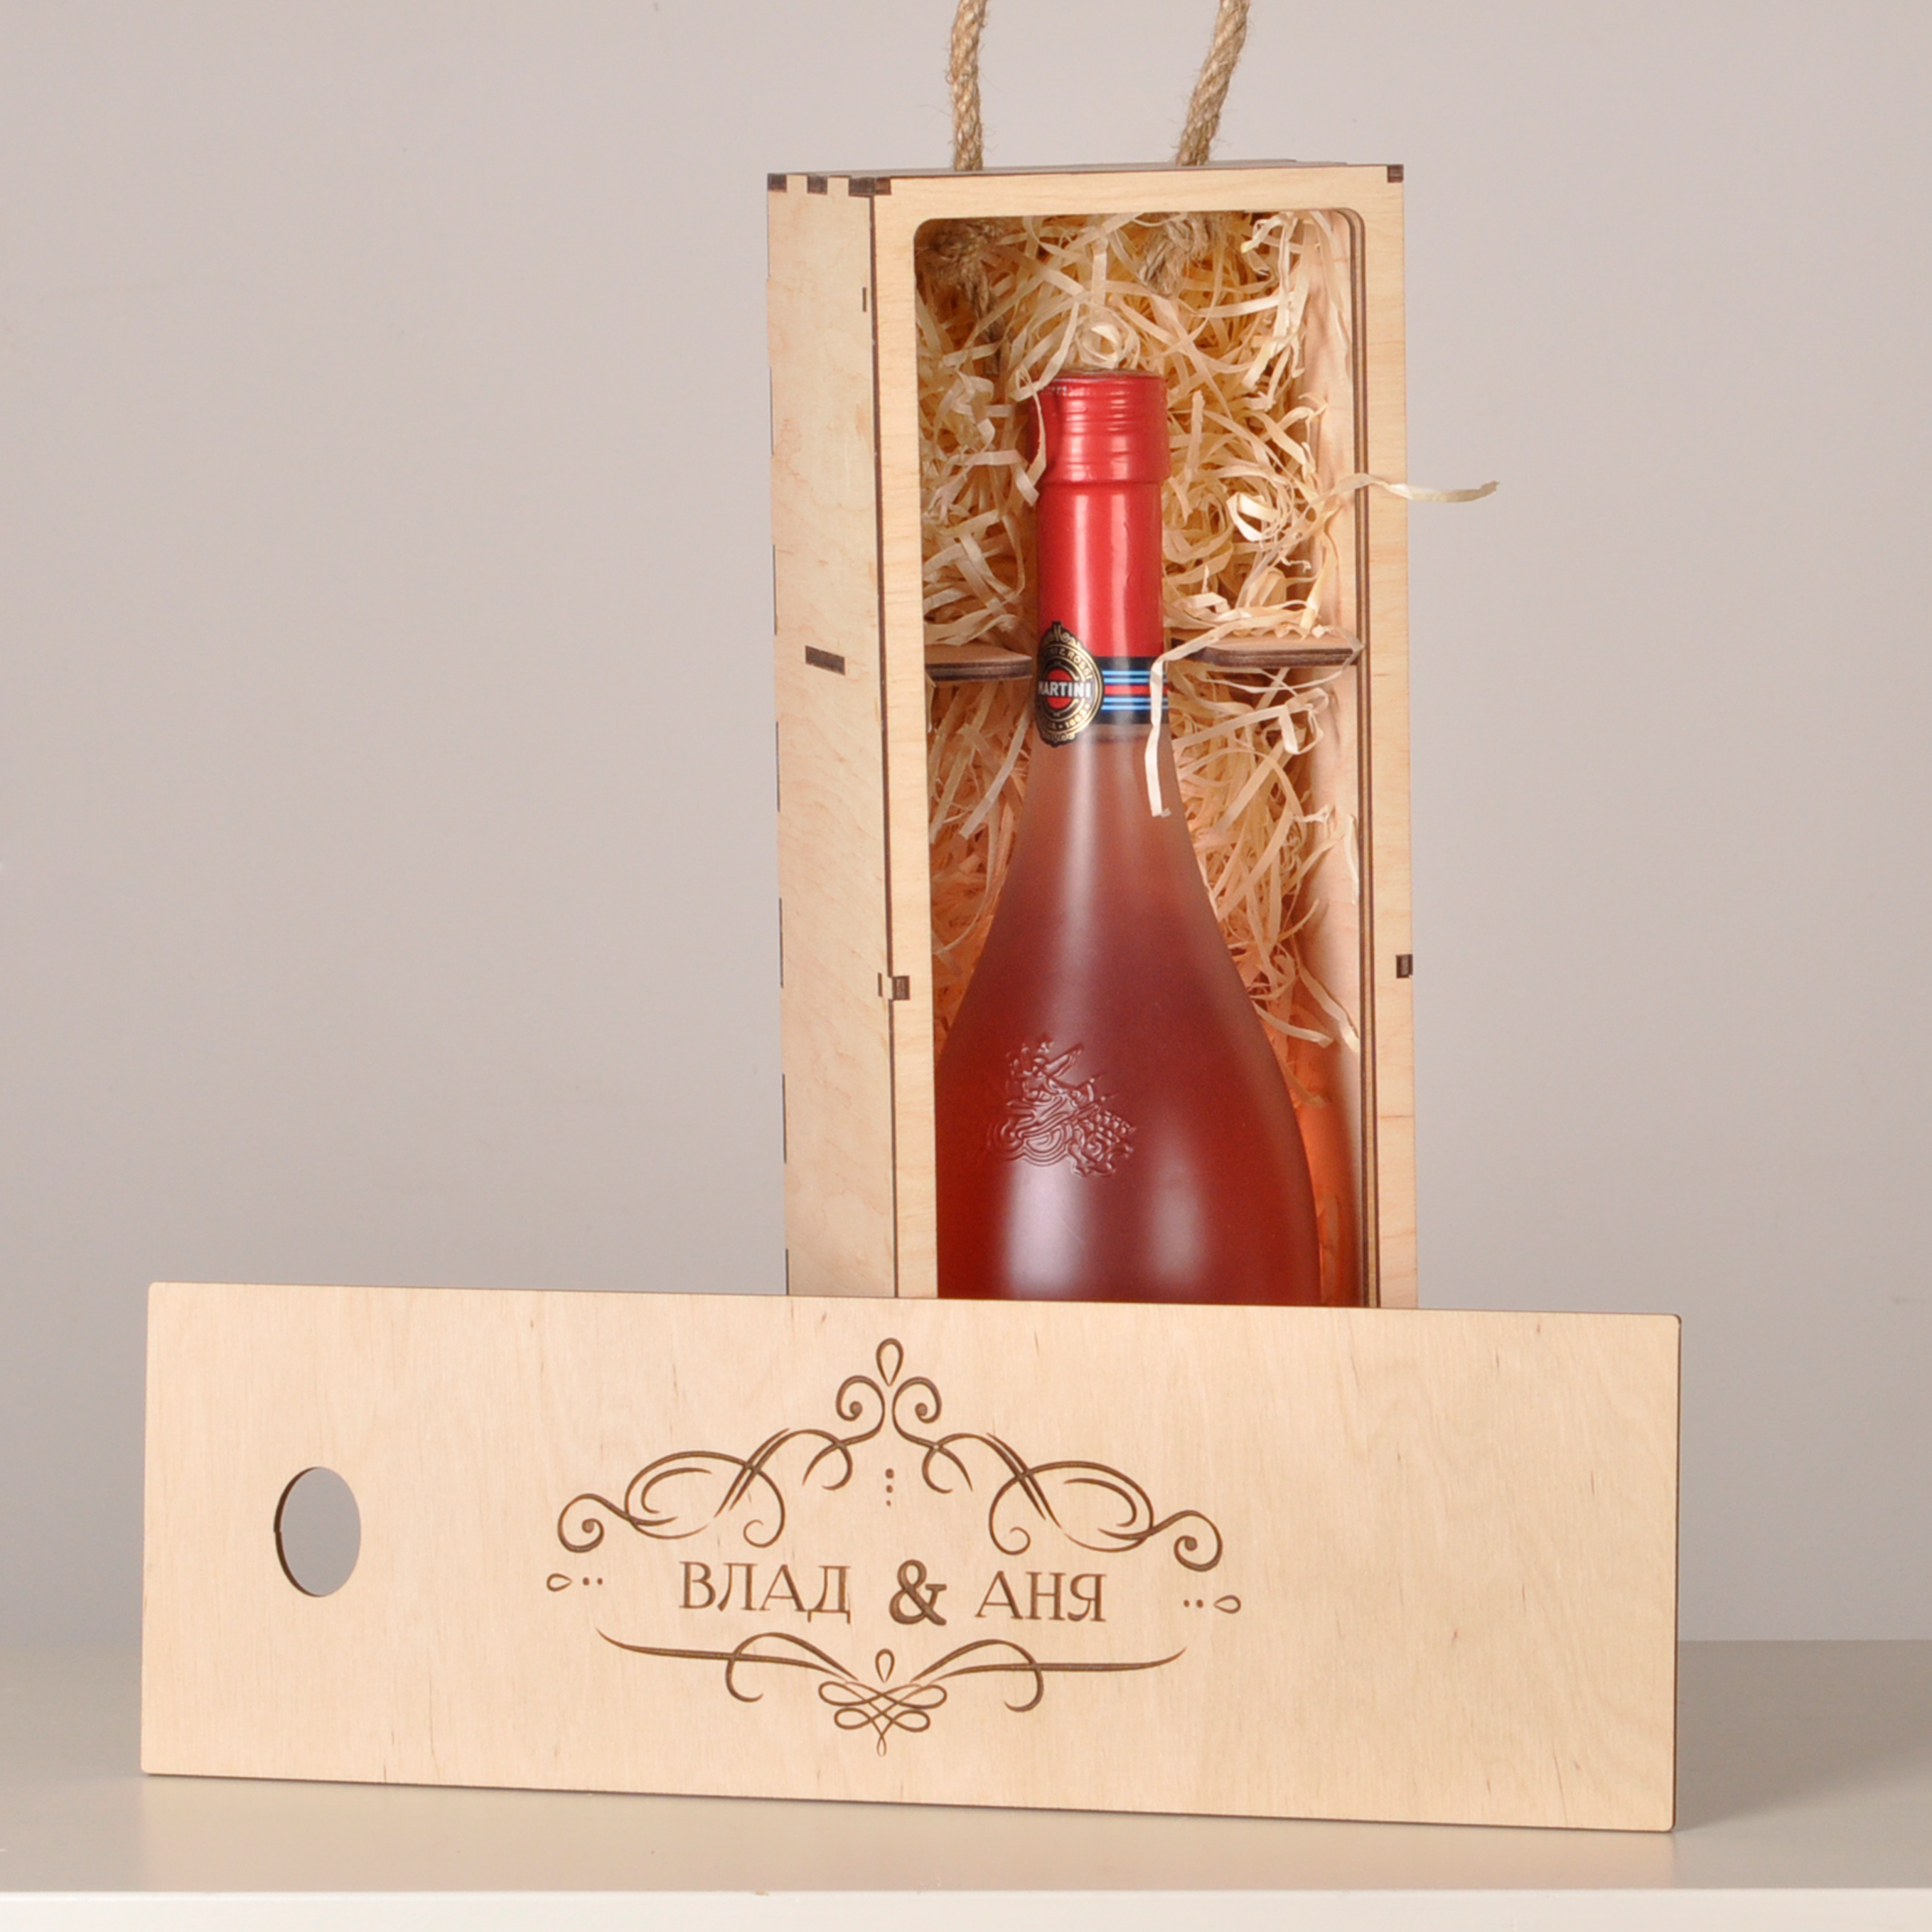 коробка для вина, коробка для вина на свадьбу, Подарункова Дерев'яна Коробка Для Шампанського, Деревянные коробки для алкоголя в Украине, дерев'яна коробка під шампанське, дерев'яна коробка, дерев'яна коробка піл алкоголь, коробка для винной церемонии, подарочная коробка для вина, деревянная коробка под бутылку, деревянная коробка для бутылки, коробка для пробок от вина,